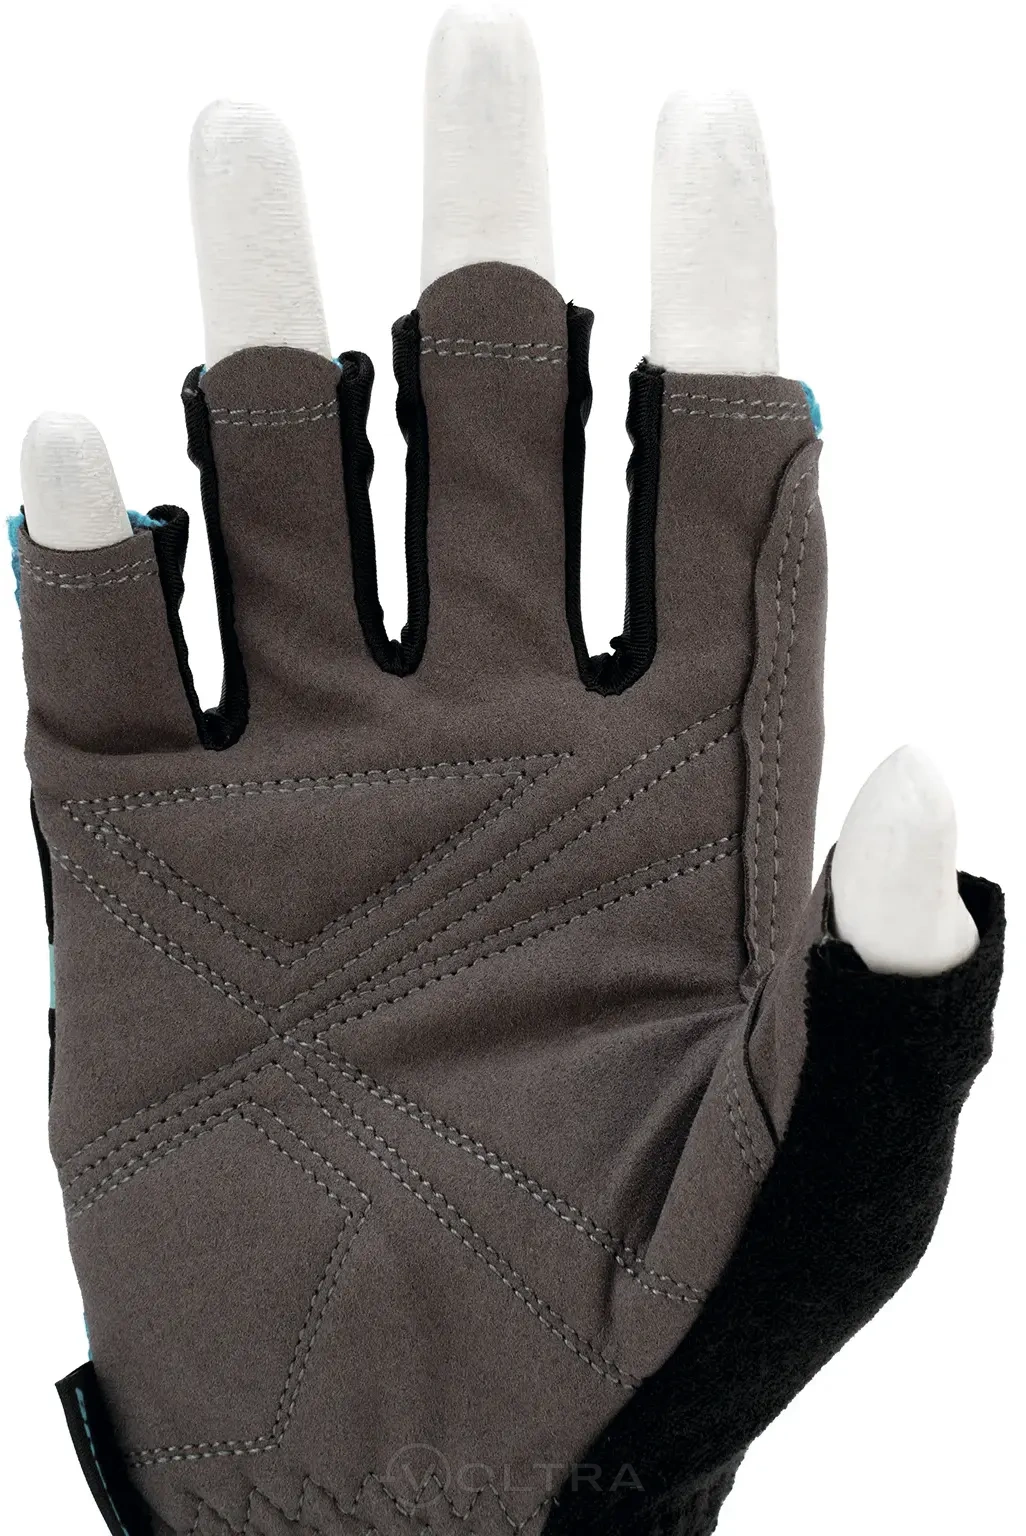 Перчатки комбинированные облегченные открытые пальцы AKTIV размер М (8) Gross (90308)